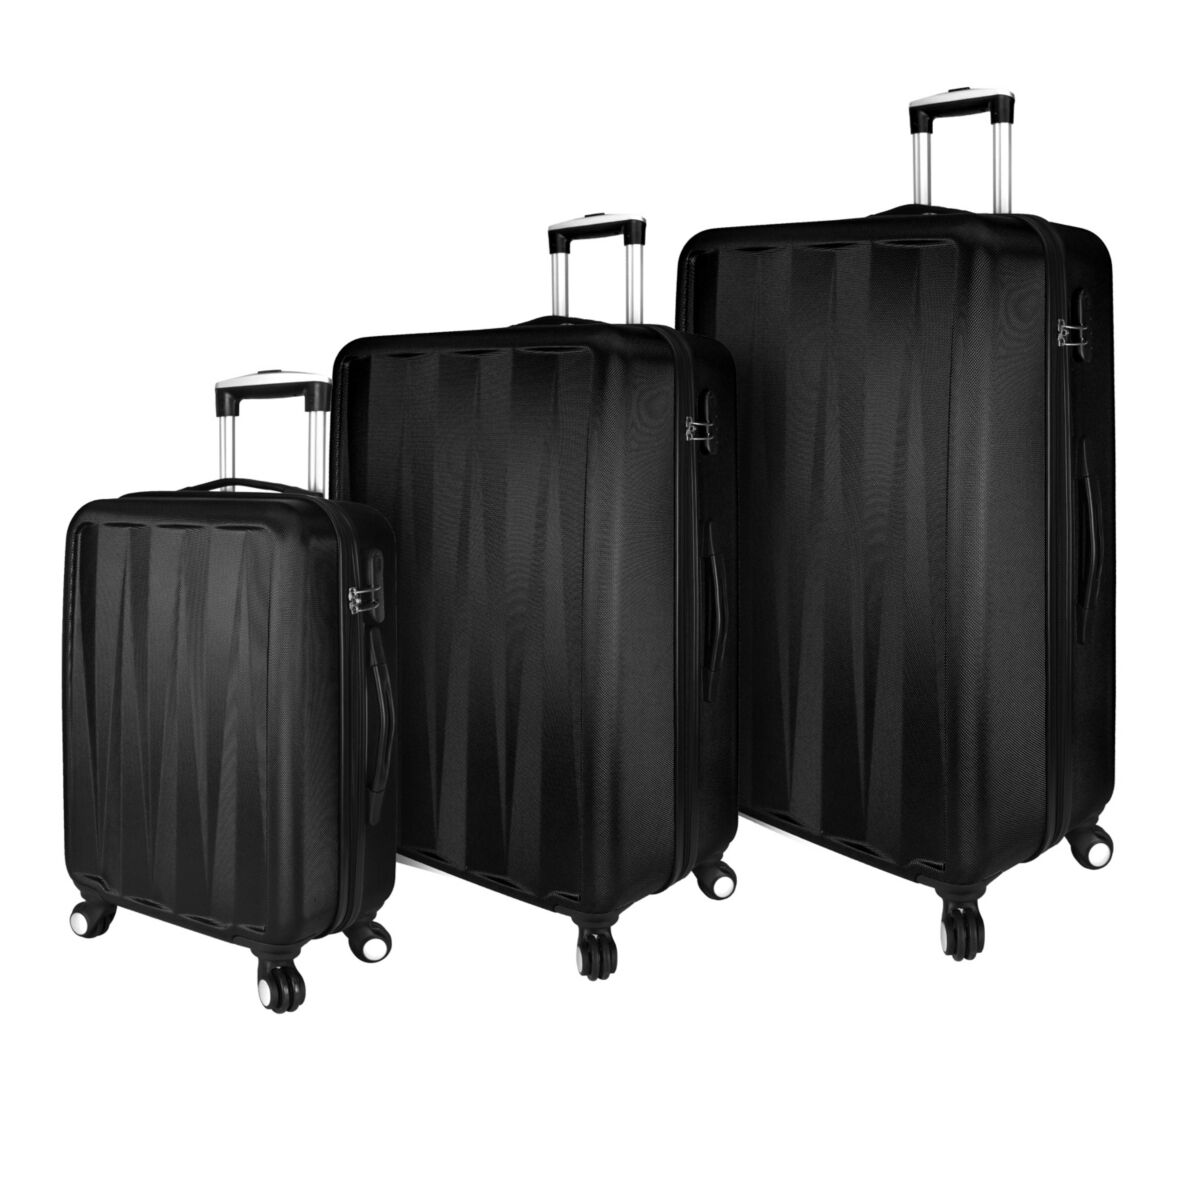 Elite Luggage Verdugo 3-Pc. Hardside Luggage Spinner Set - Black